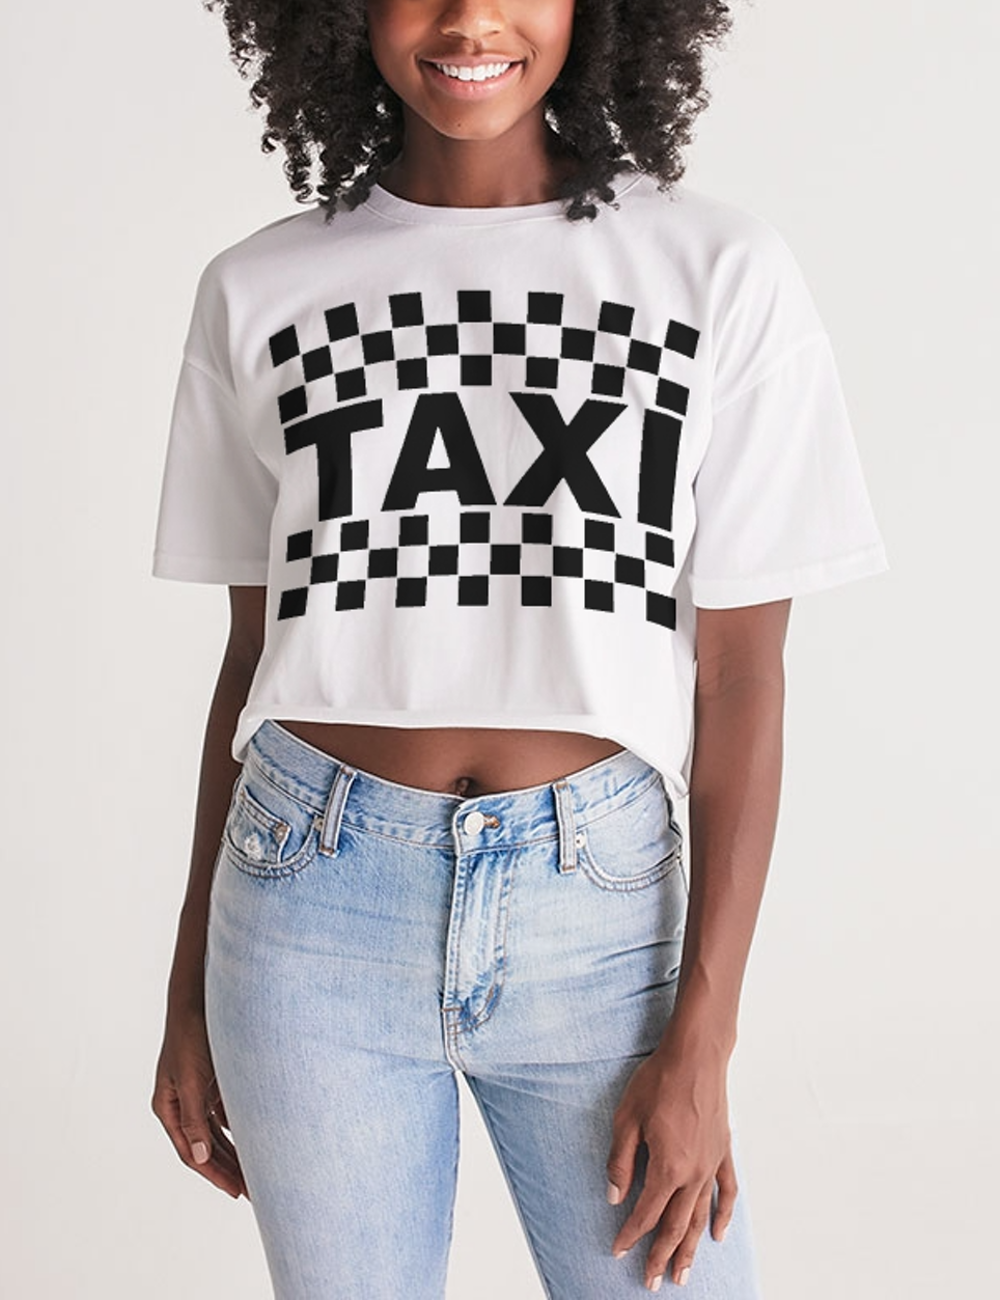 Classic Taxi Sign Women's Oversized Crop Top T-Shirt OniTakai